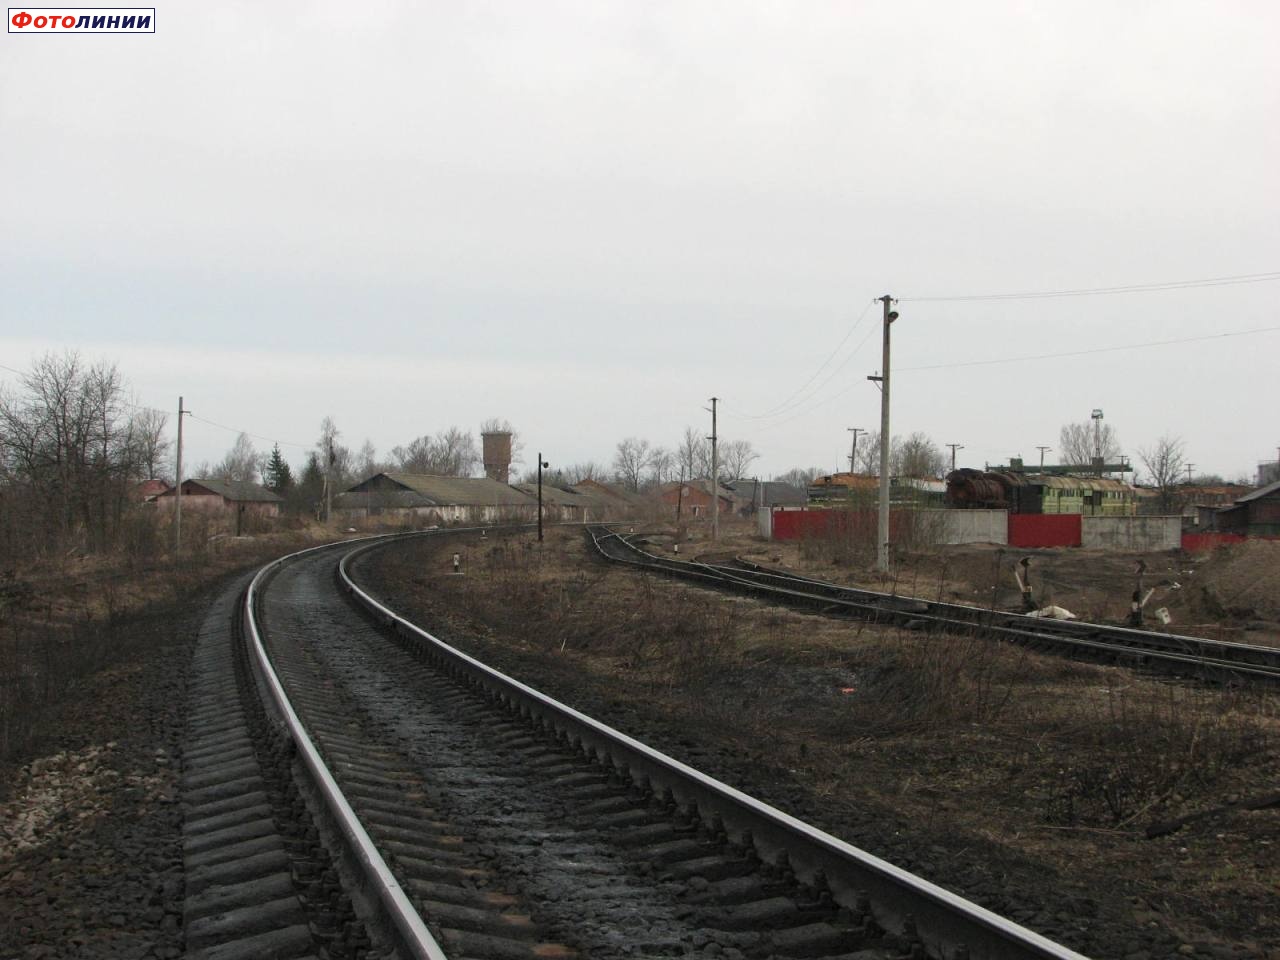 Вид на чётную горловину Себежского парка и базу запаса (справа - соединительная ветка с Витебской дороги)